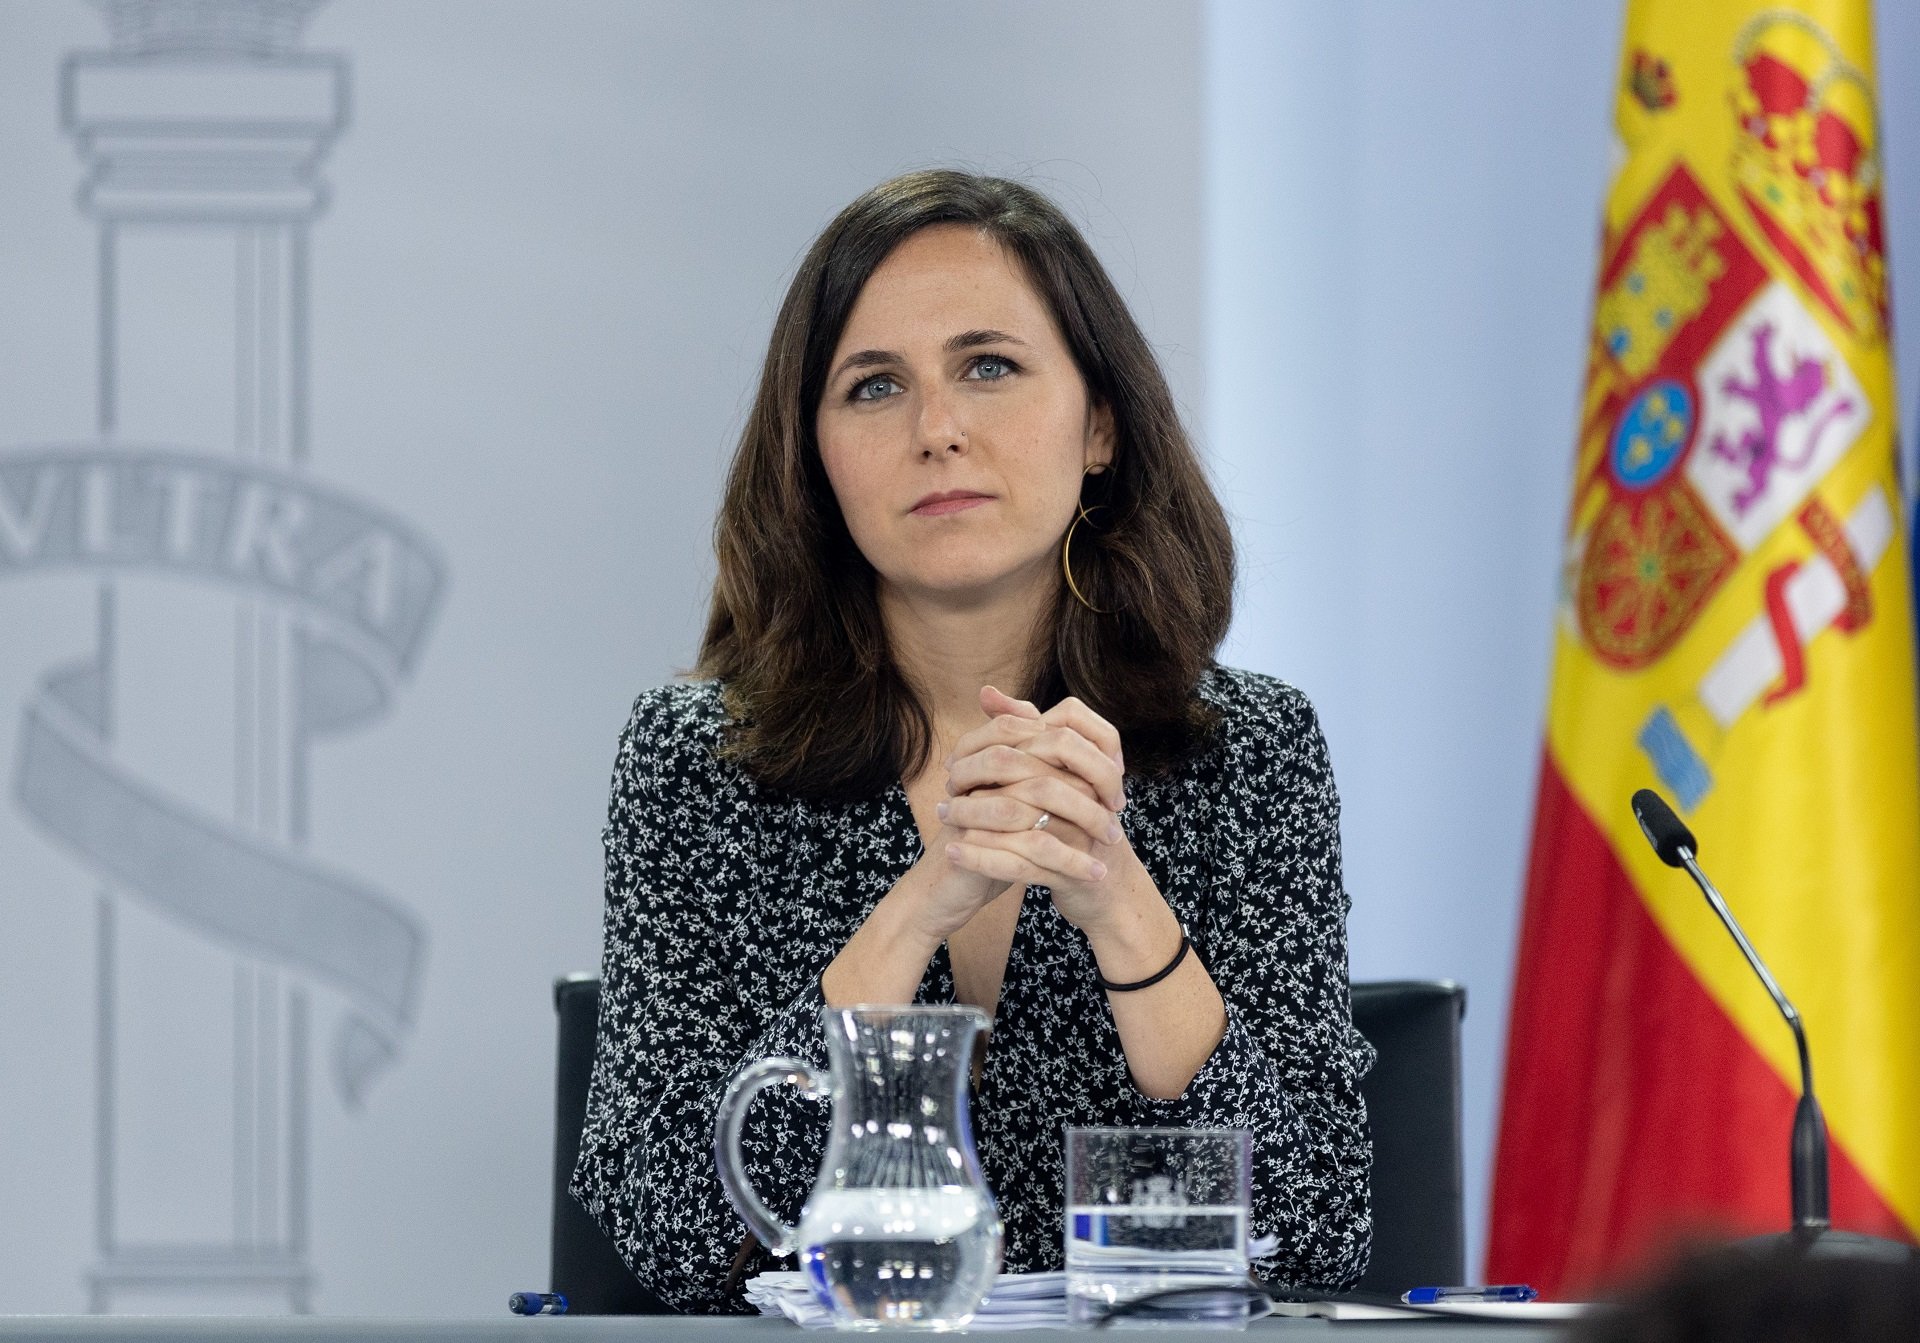 La propuesta de Podemos para la renta garantizada: entre 700 y 1.400 euros al mes desde los 18 años